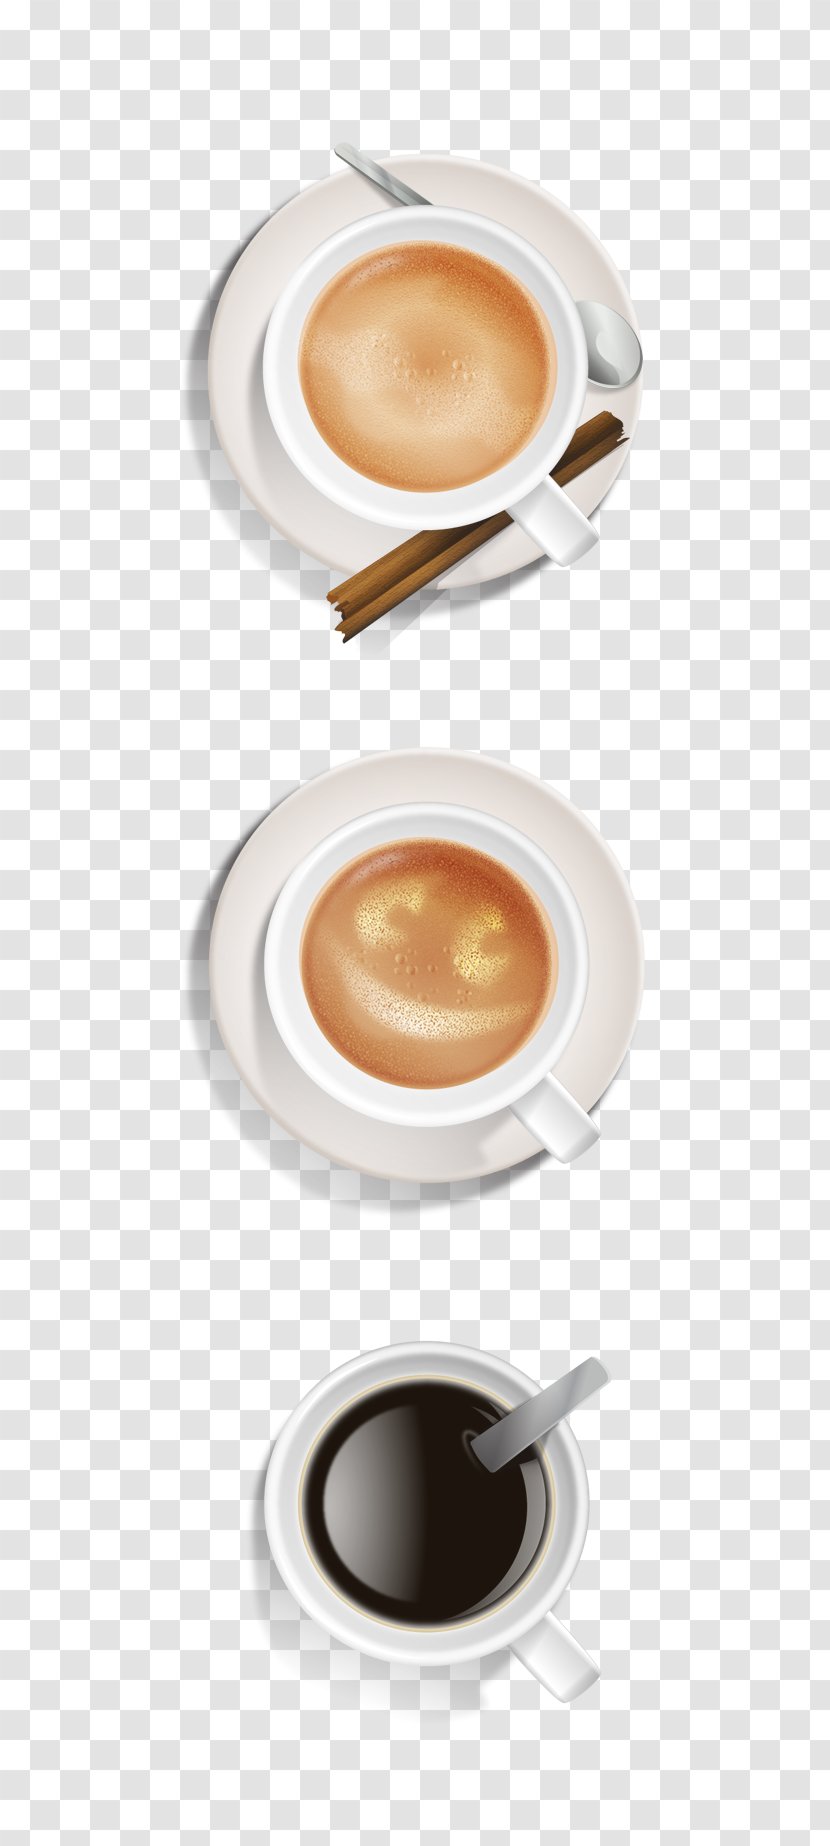 Cuban Espresso Coffee Cup Doppio - Ristretto Transparent PNG